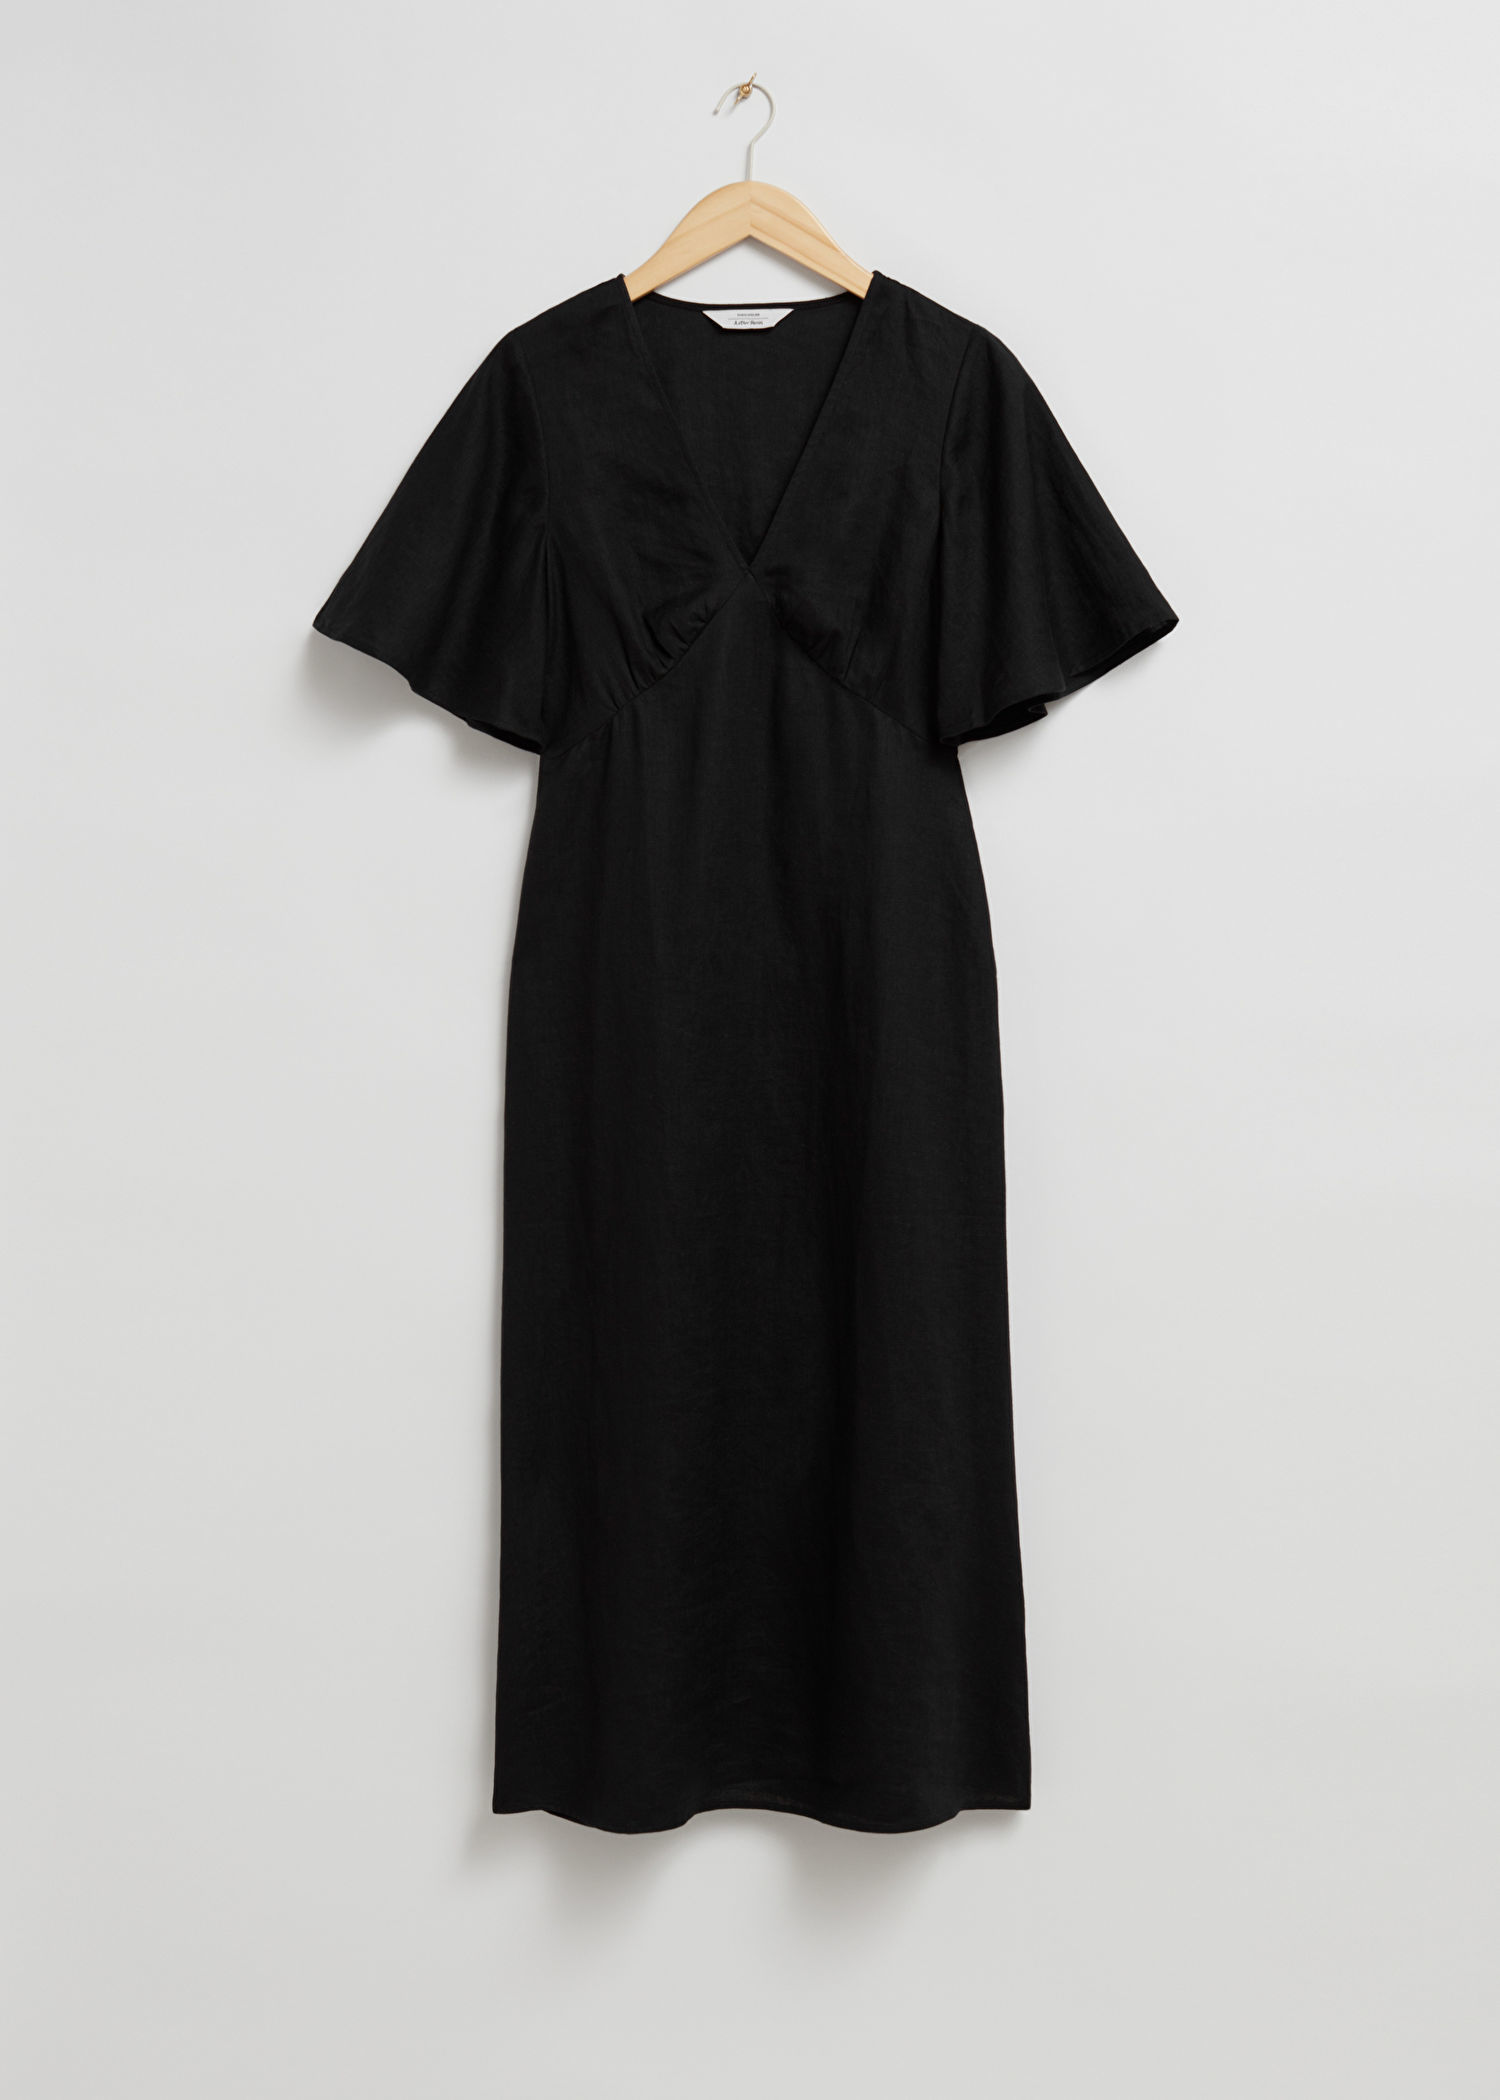 Vestido negro con escote en uve de & Other Stories (89 euros).